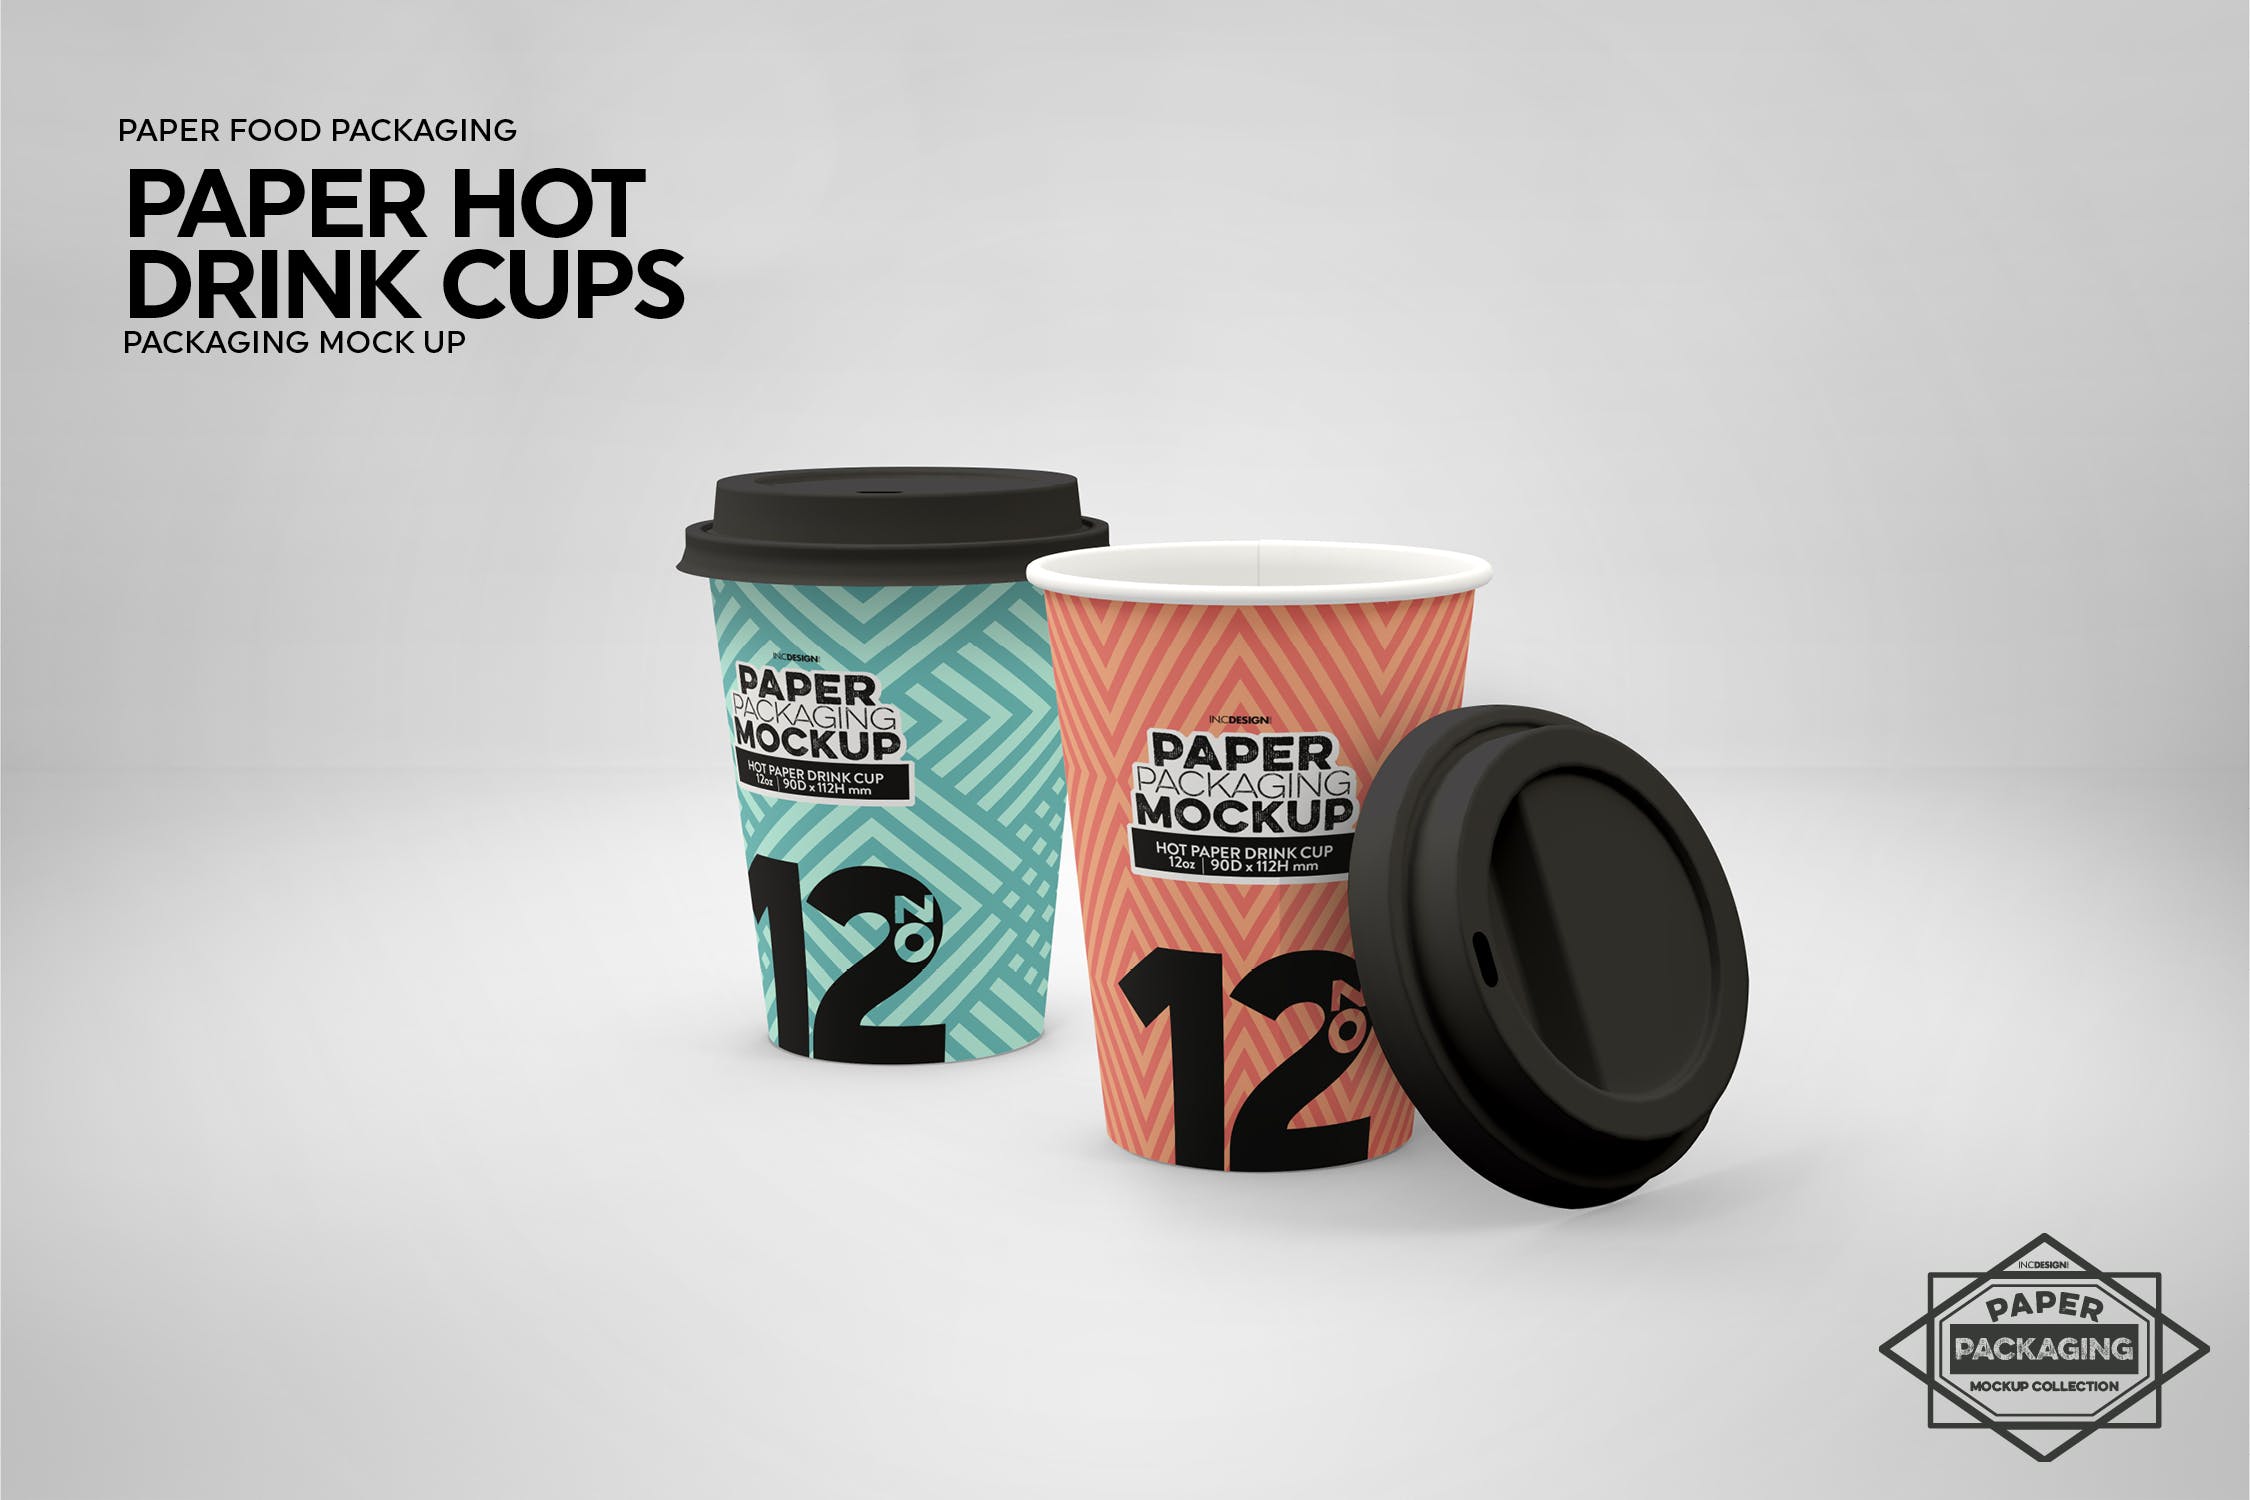 热饮一次性纸杯外观设计蚂蚁素材精选 Paper Hot Drink Cups Packaging Mockup插图(10)